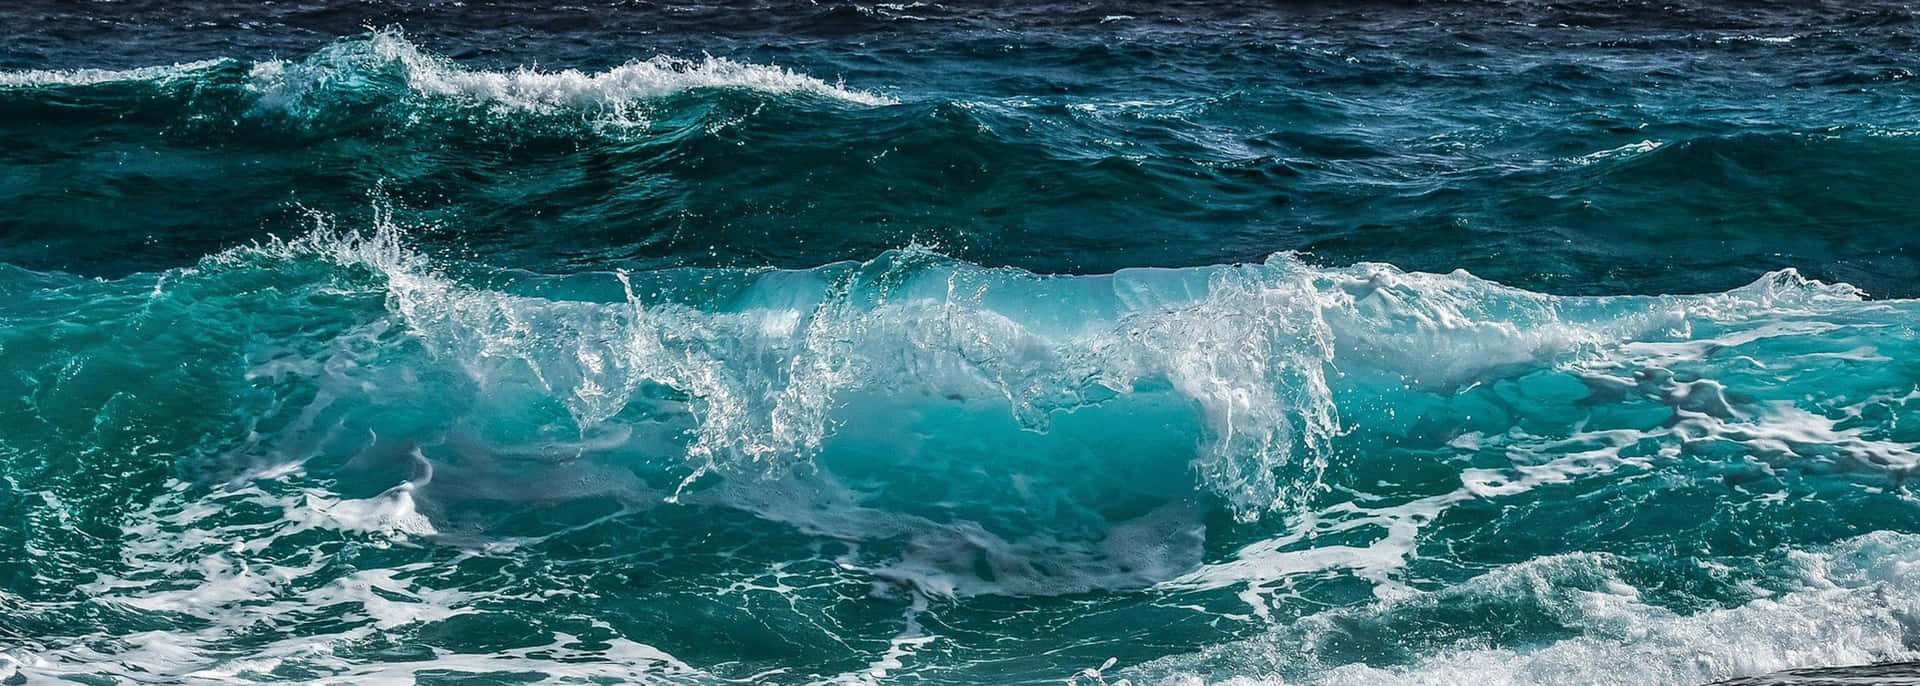 Imagenestética De Mar En Formato Ultrapanorámico